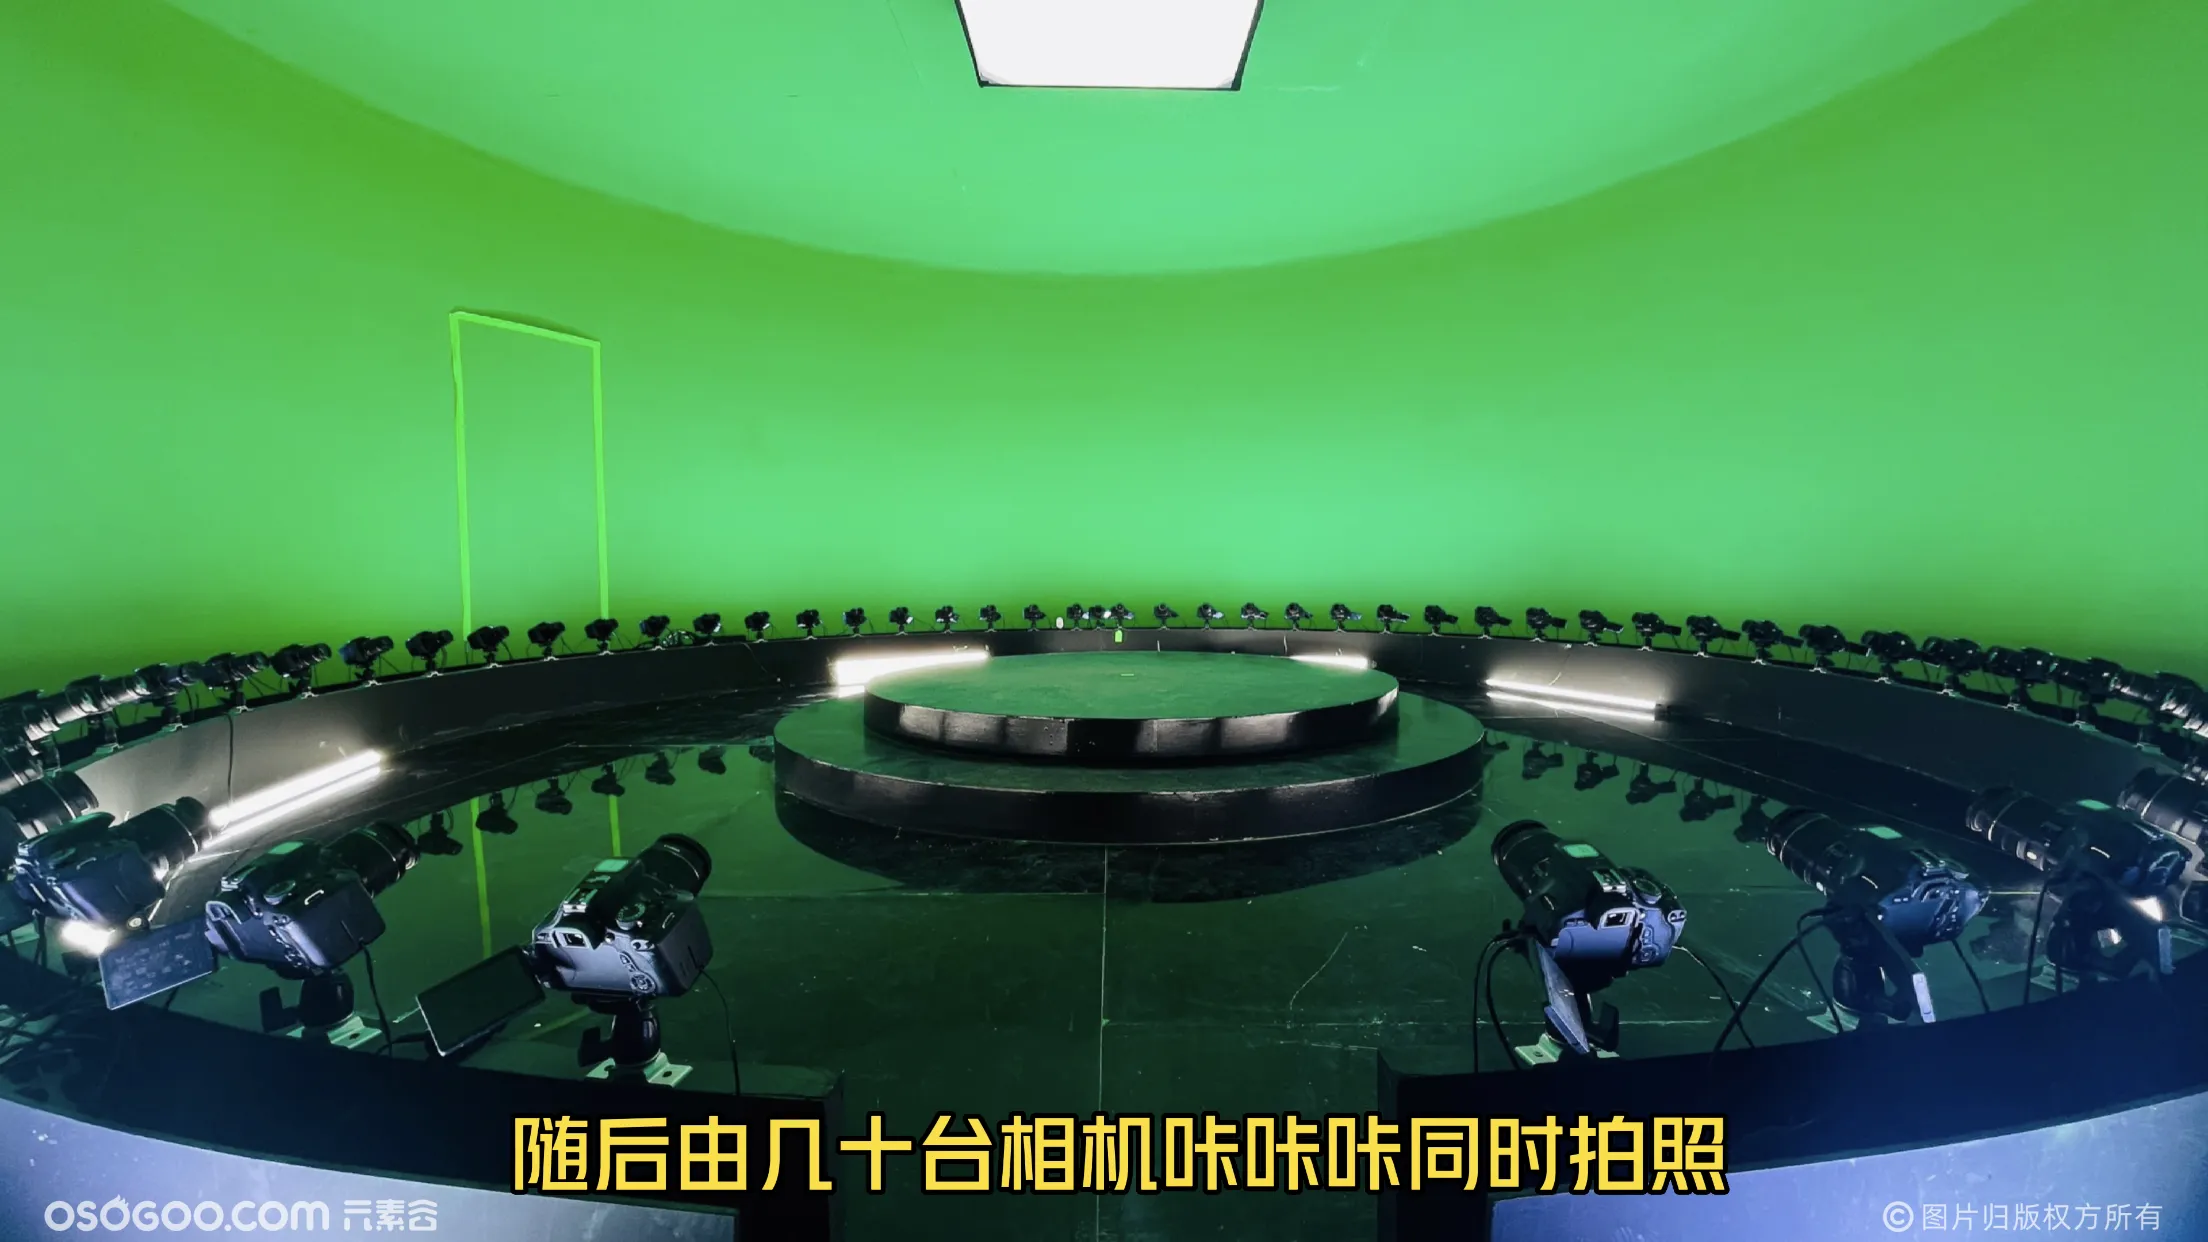 360度绿幕子弹时间体验空间/线下活动高端互动体验